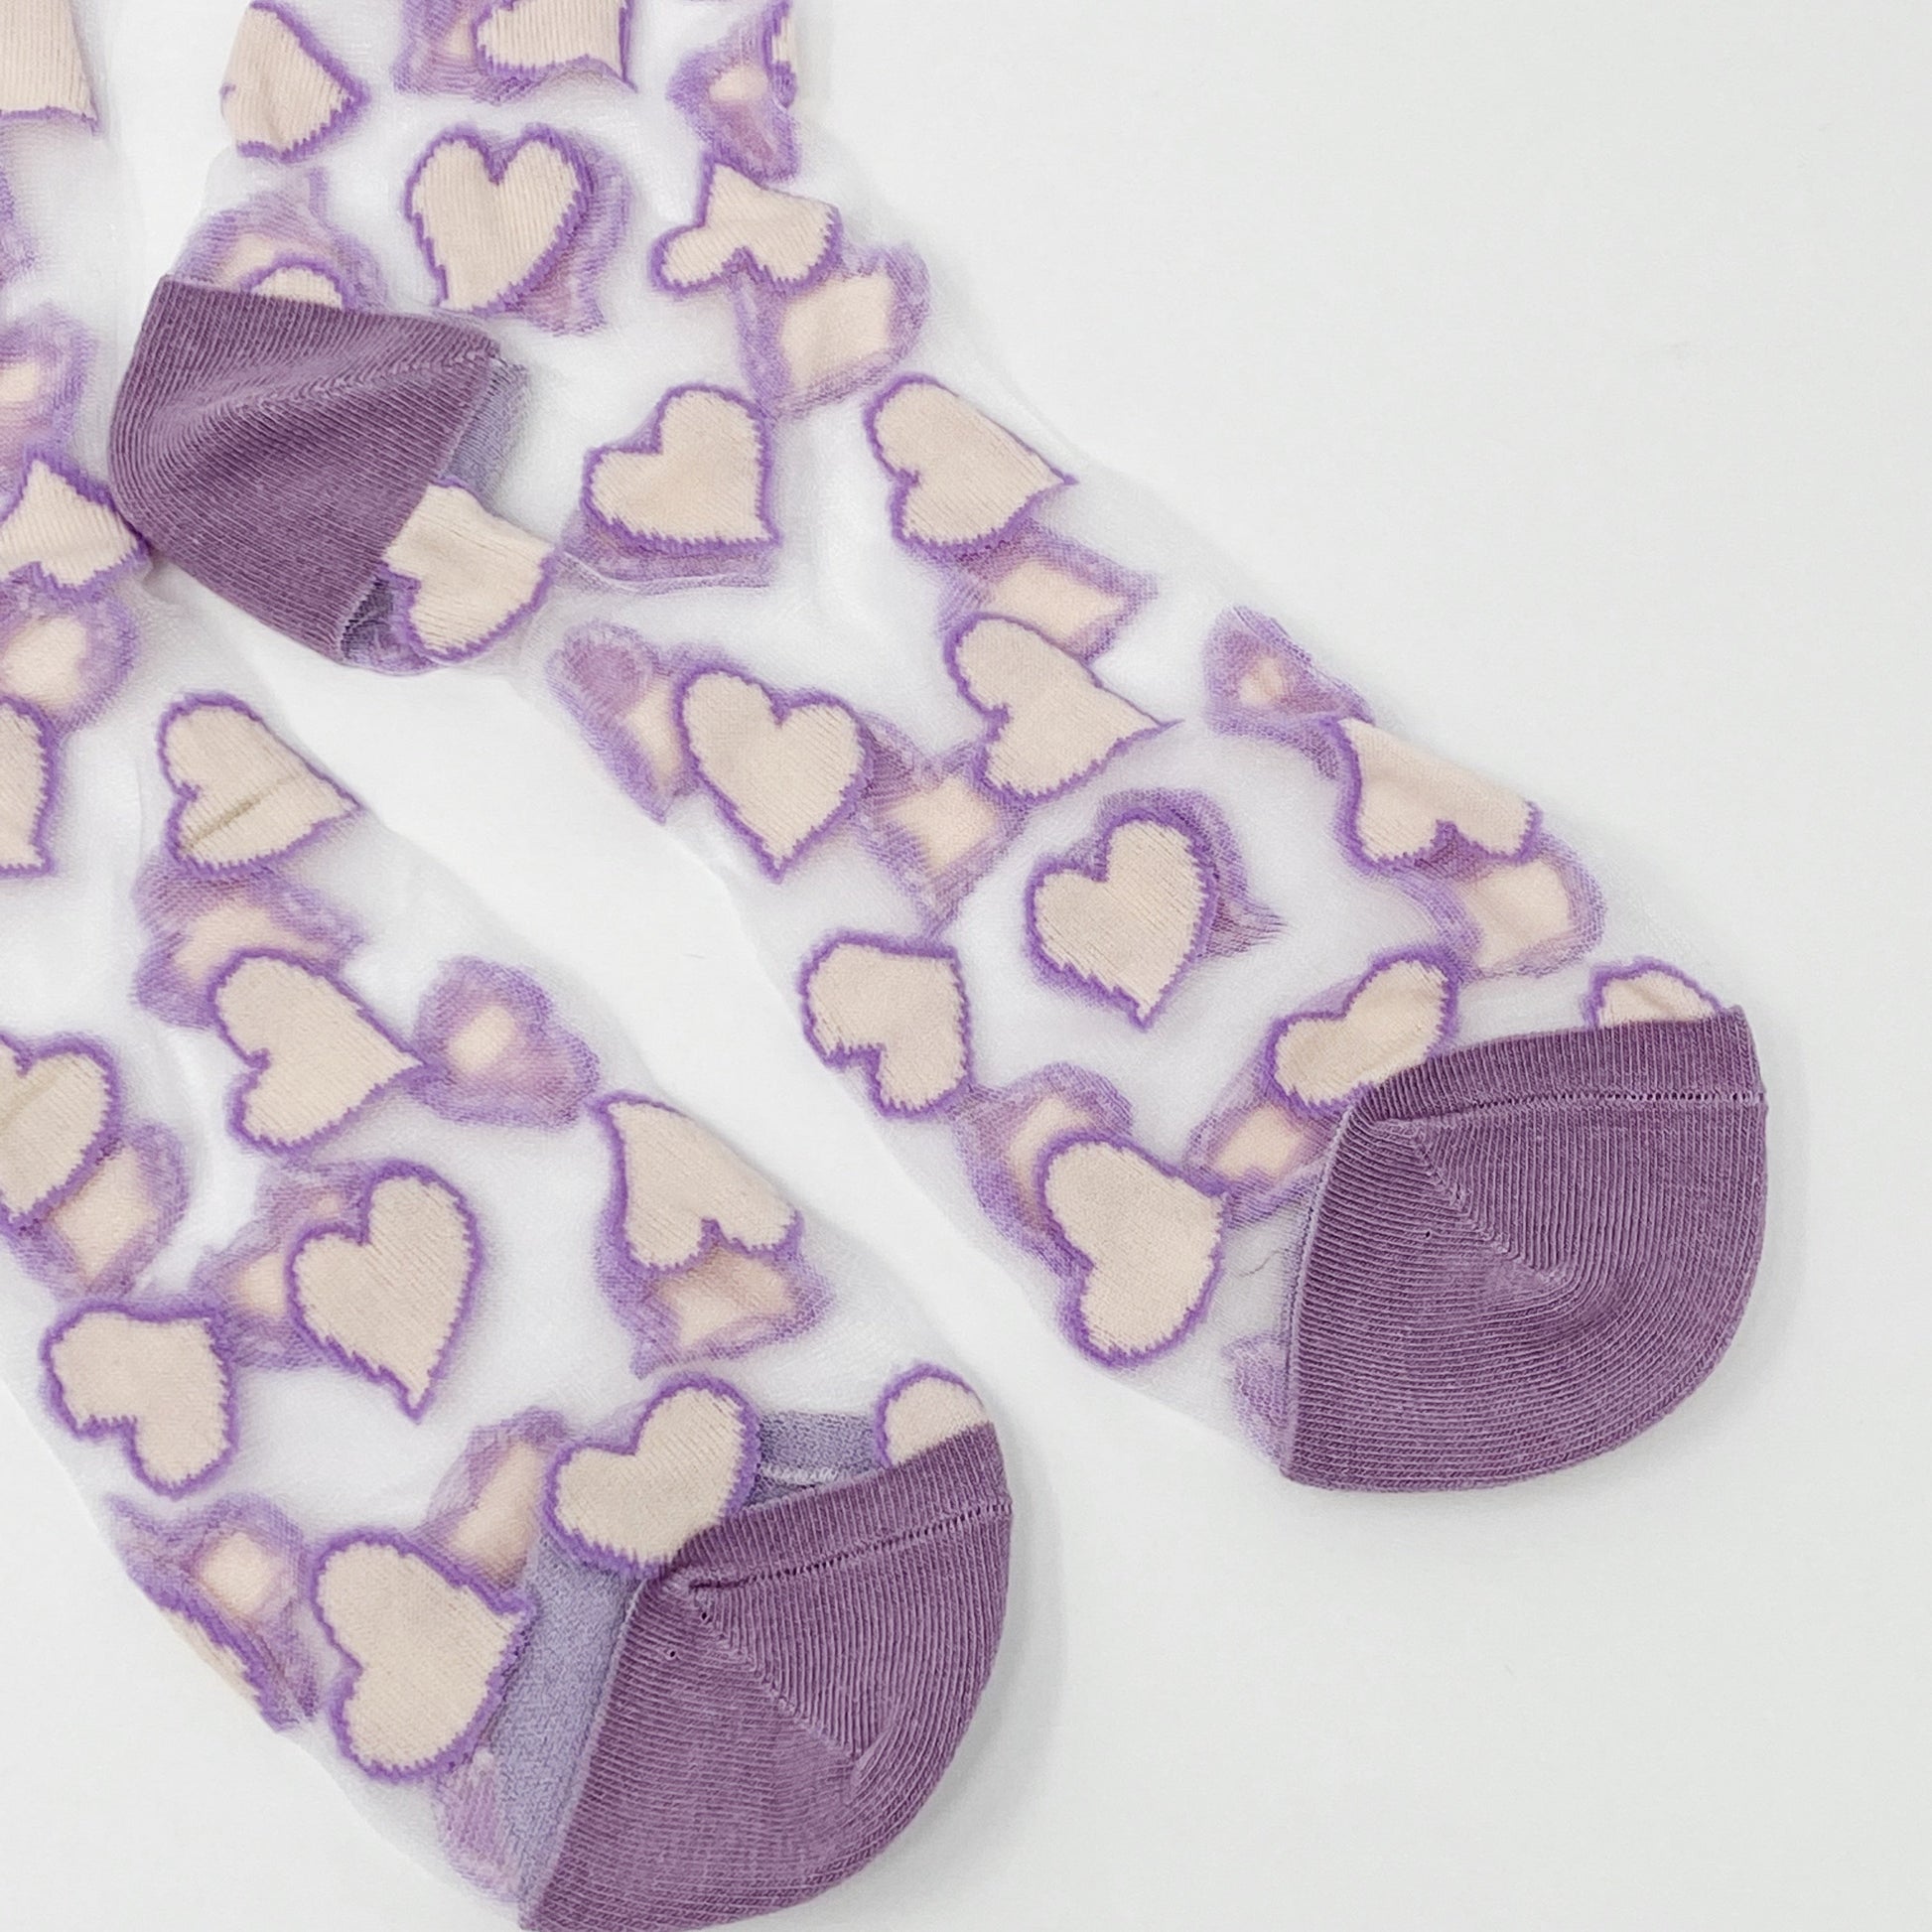 Heartful Love Sheer Socks - Scarvesnthangs